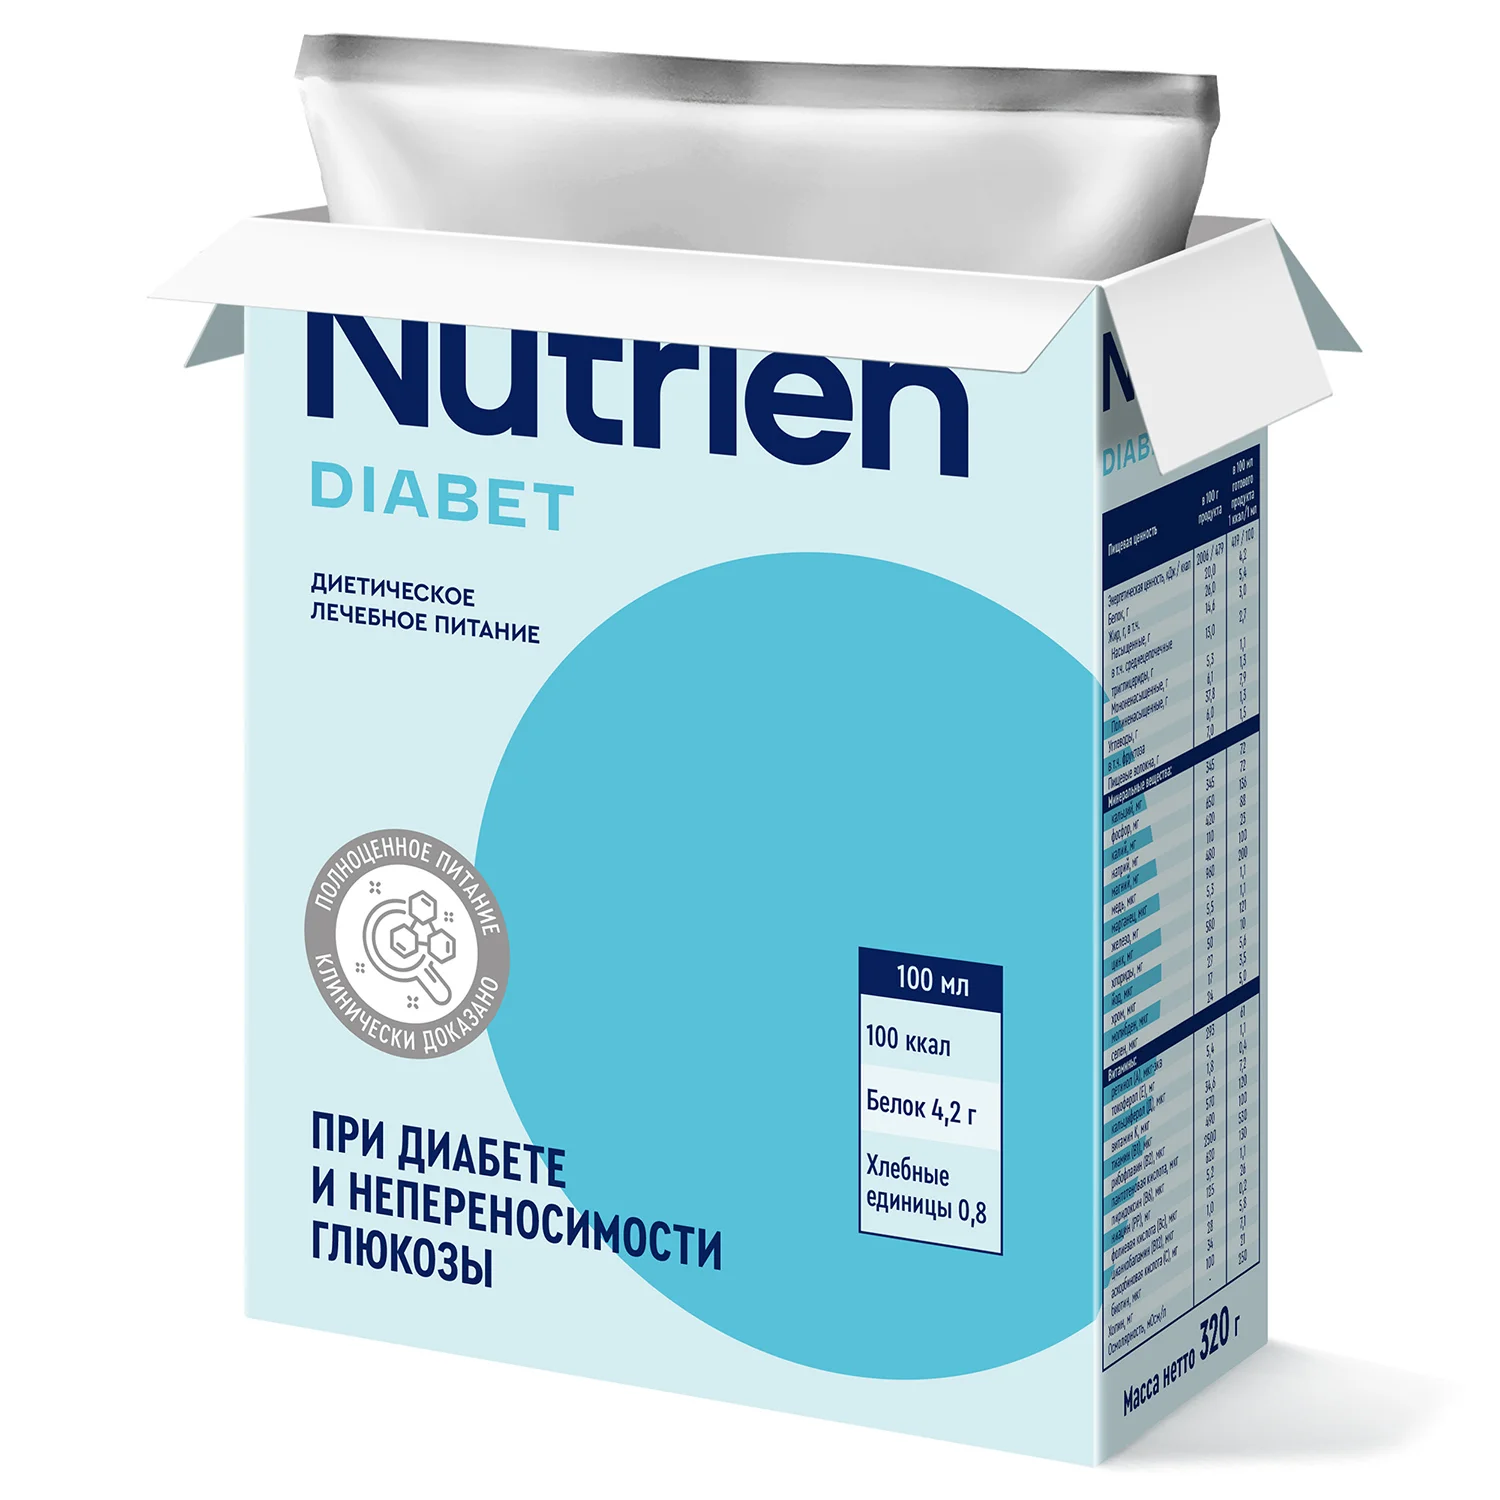 Nutrien Diabet - 8